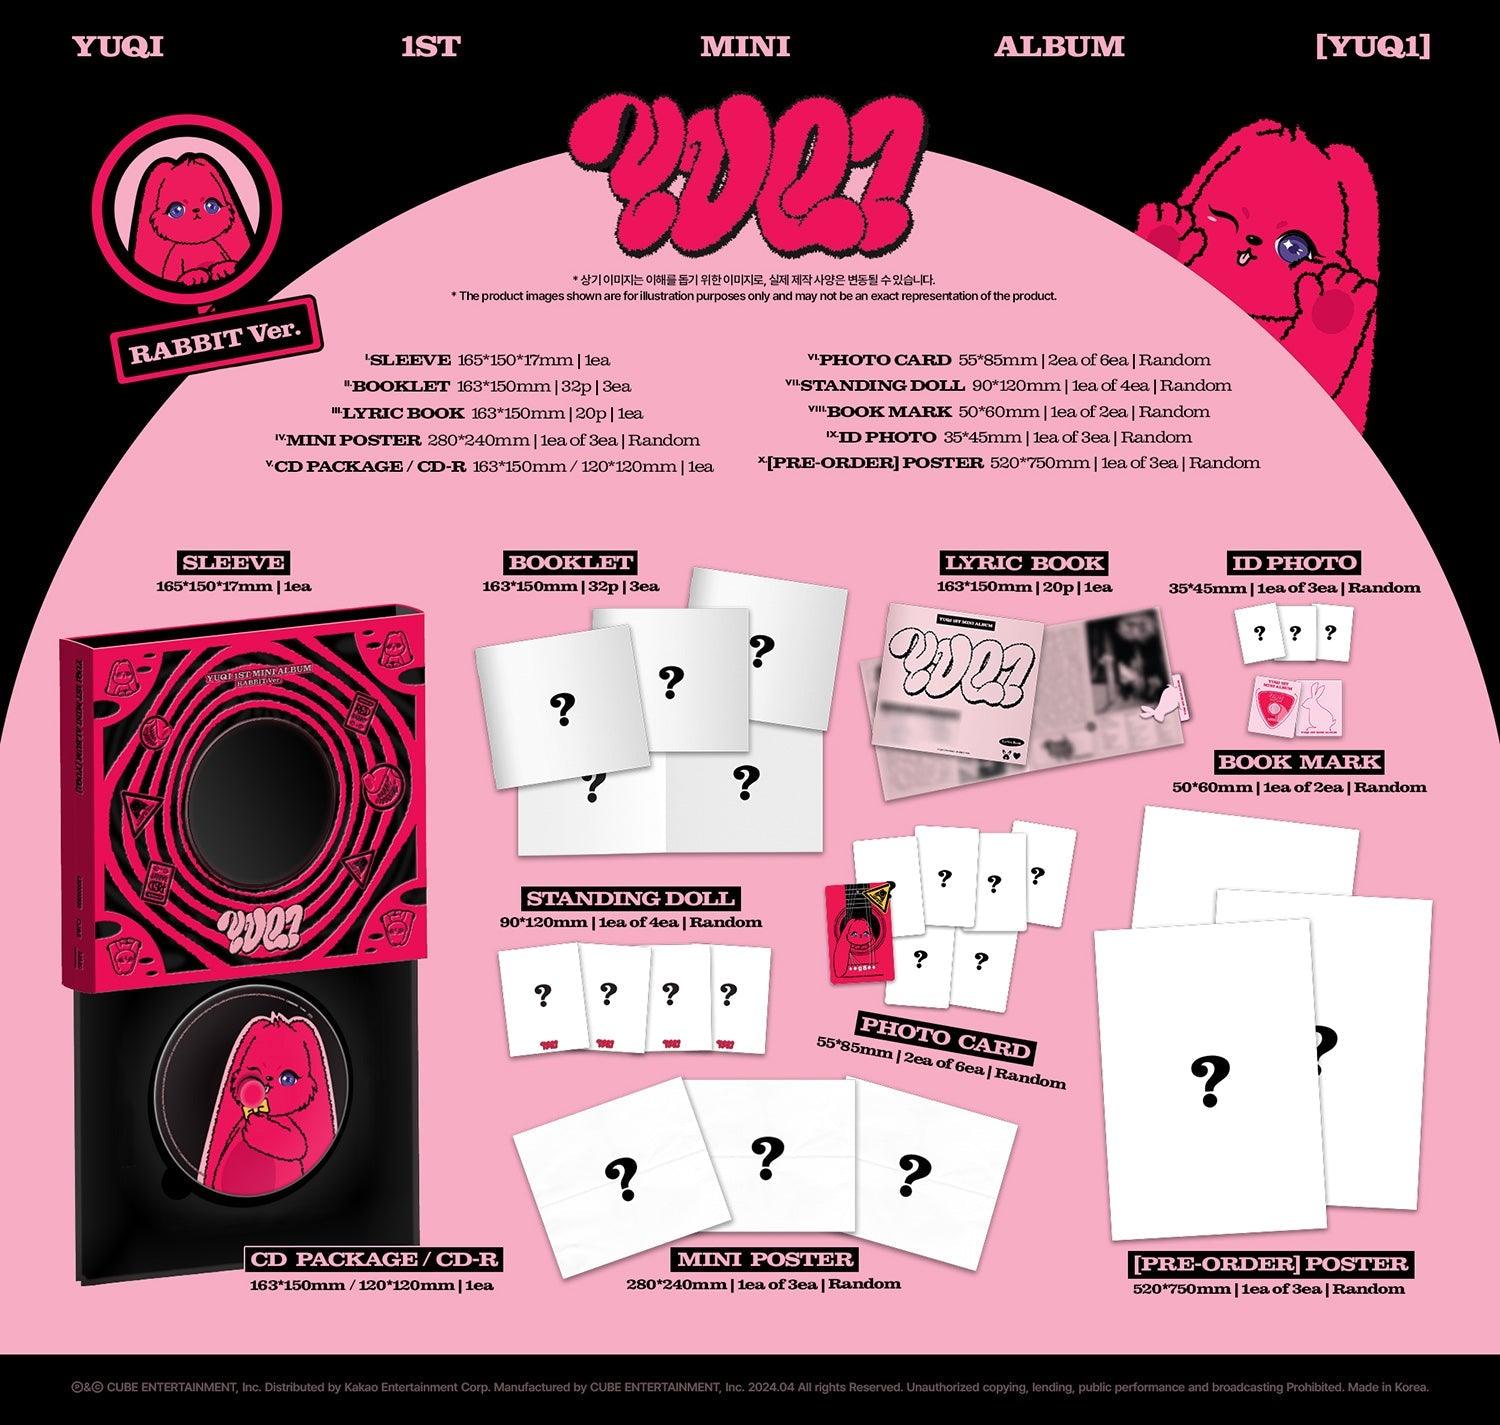 YUQI ((G)I-DLE) 1st Mini Album [YUQ1] + MAKESTAR GIFT - K-POP WORLD